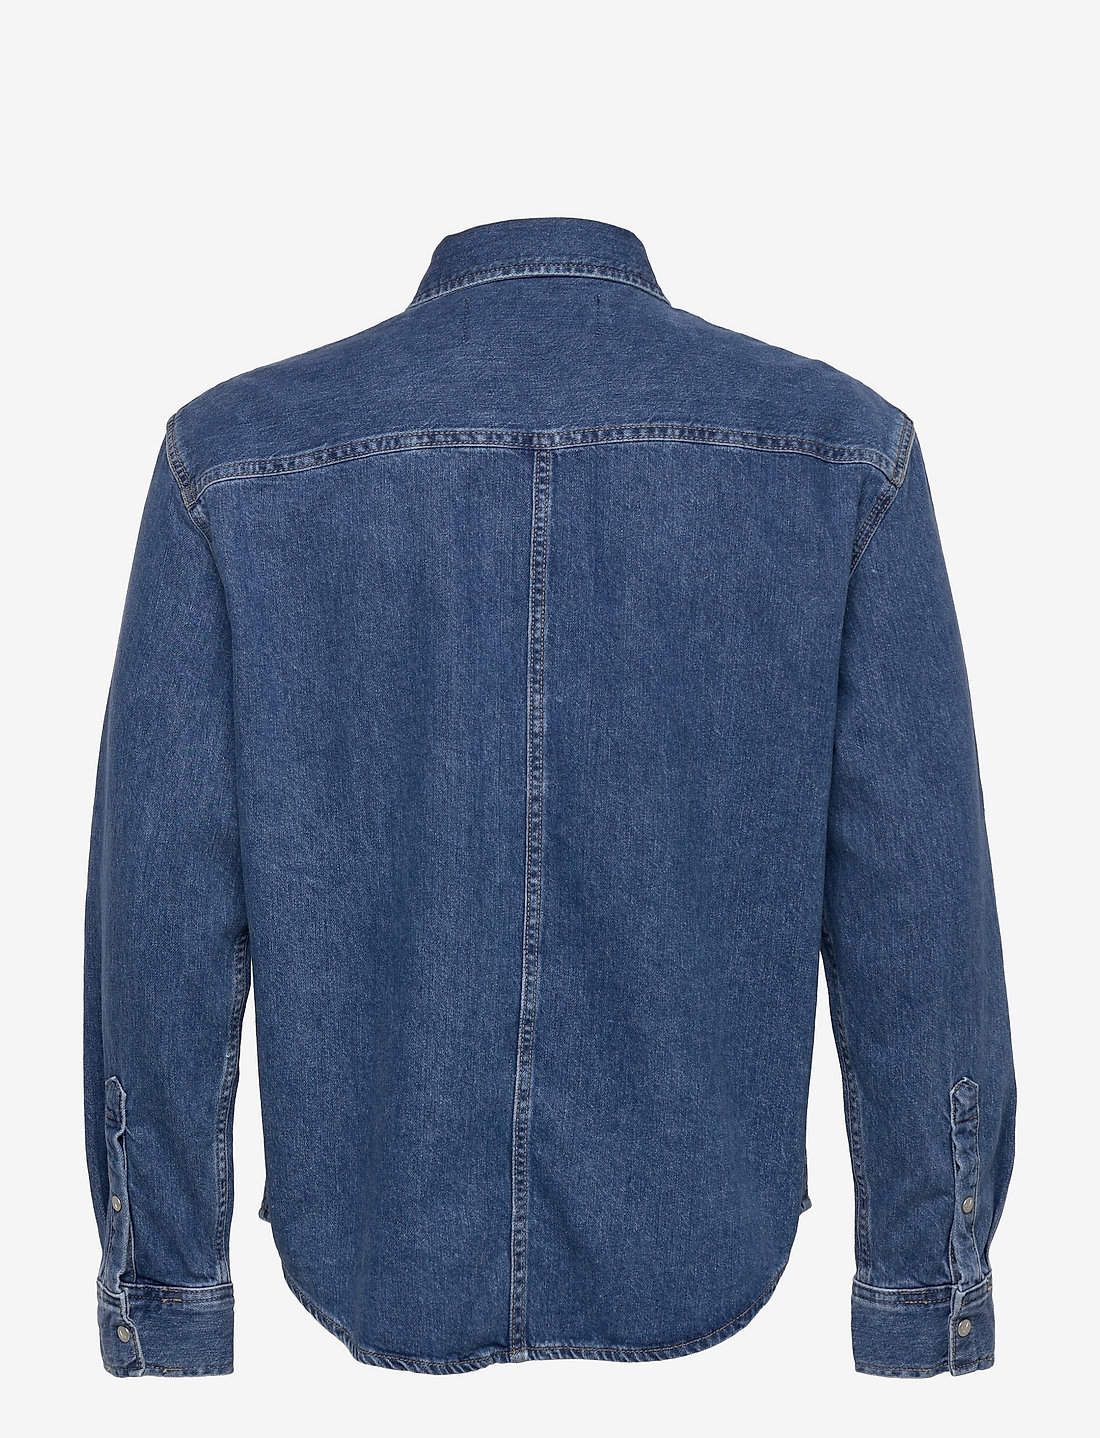 dividend winnaar Omhoog Calvin Klein Jeans Linear Denim Shirt - Casual overhemden - Boozt.com